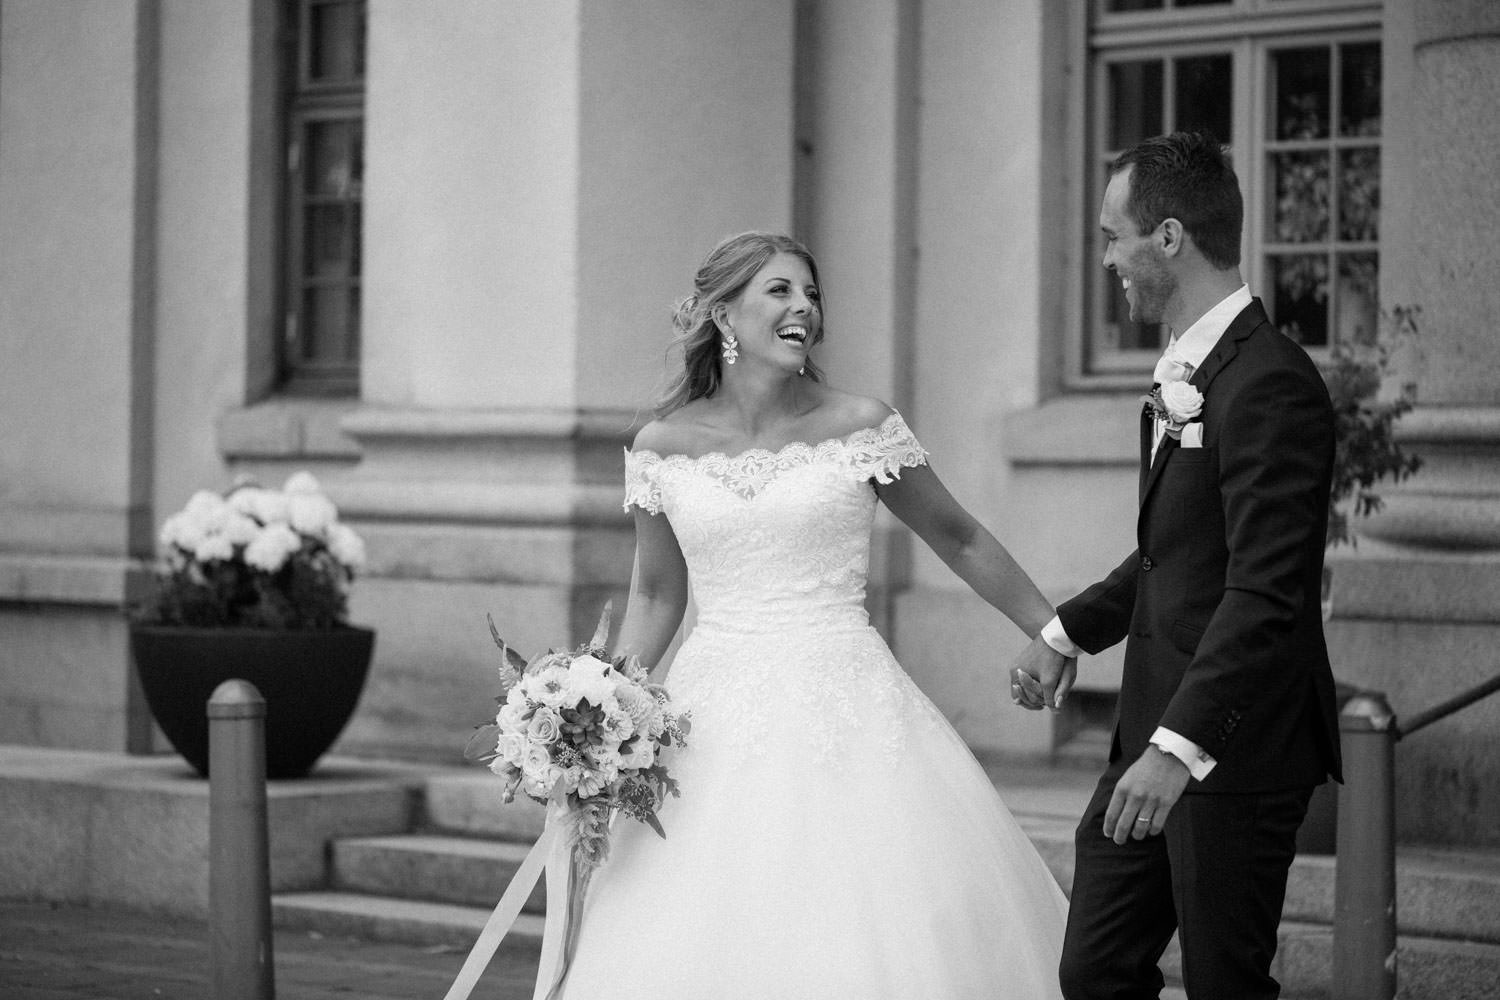 Johanna och Simon valde vackra Örenäs Slott som bröllopslokal för deras bröllop i Örenäs Trädgård samt för bröllopsfesten, en populär bröllopslokal här i Skåne. Fotograf: Tove Lundquist. 